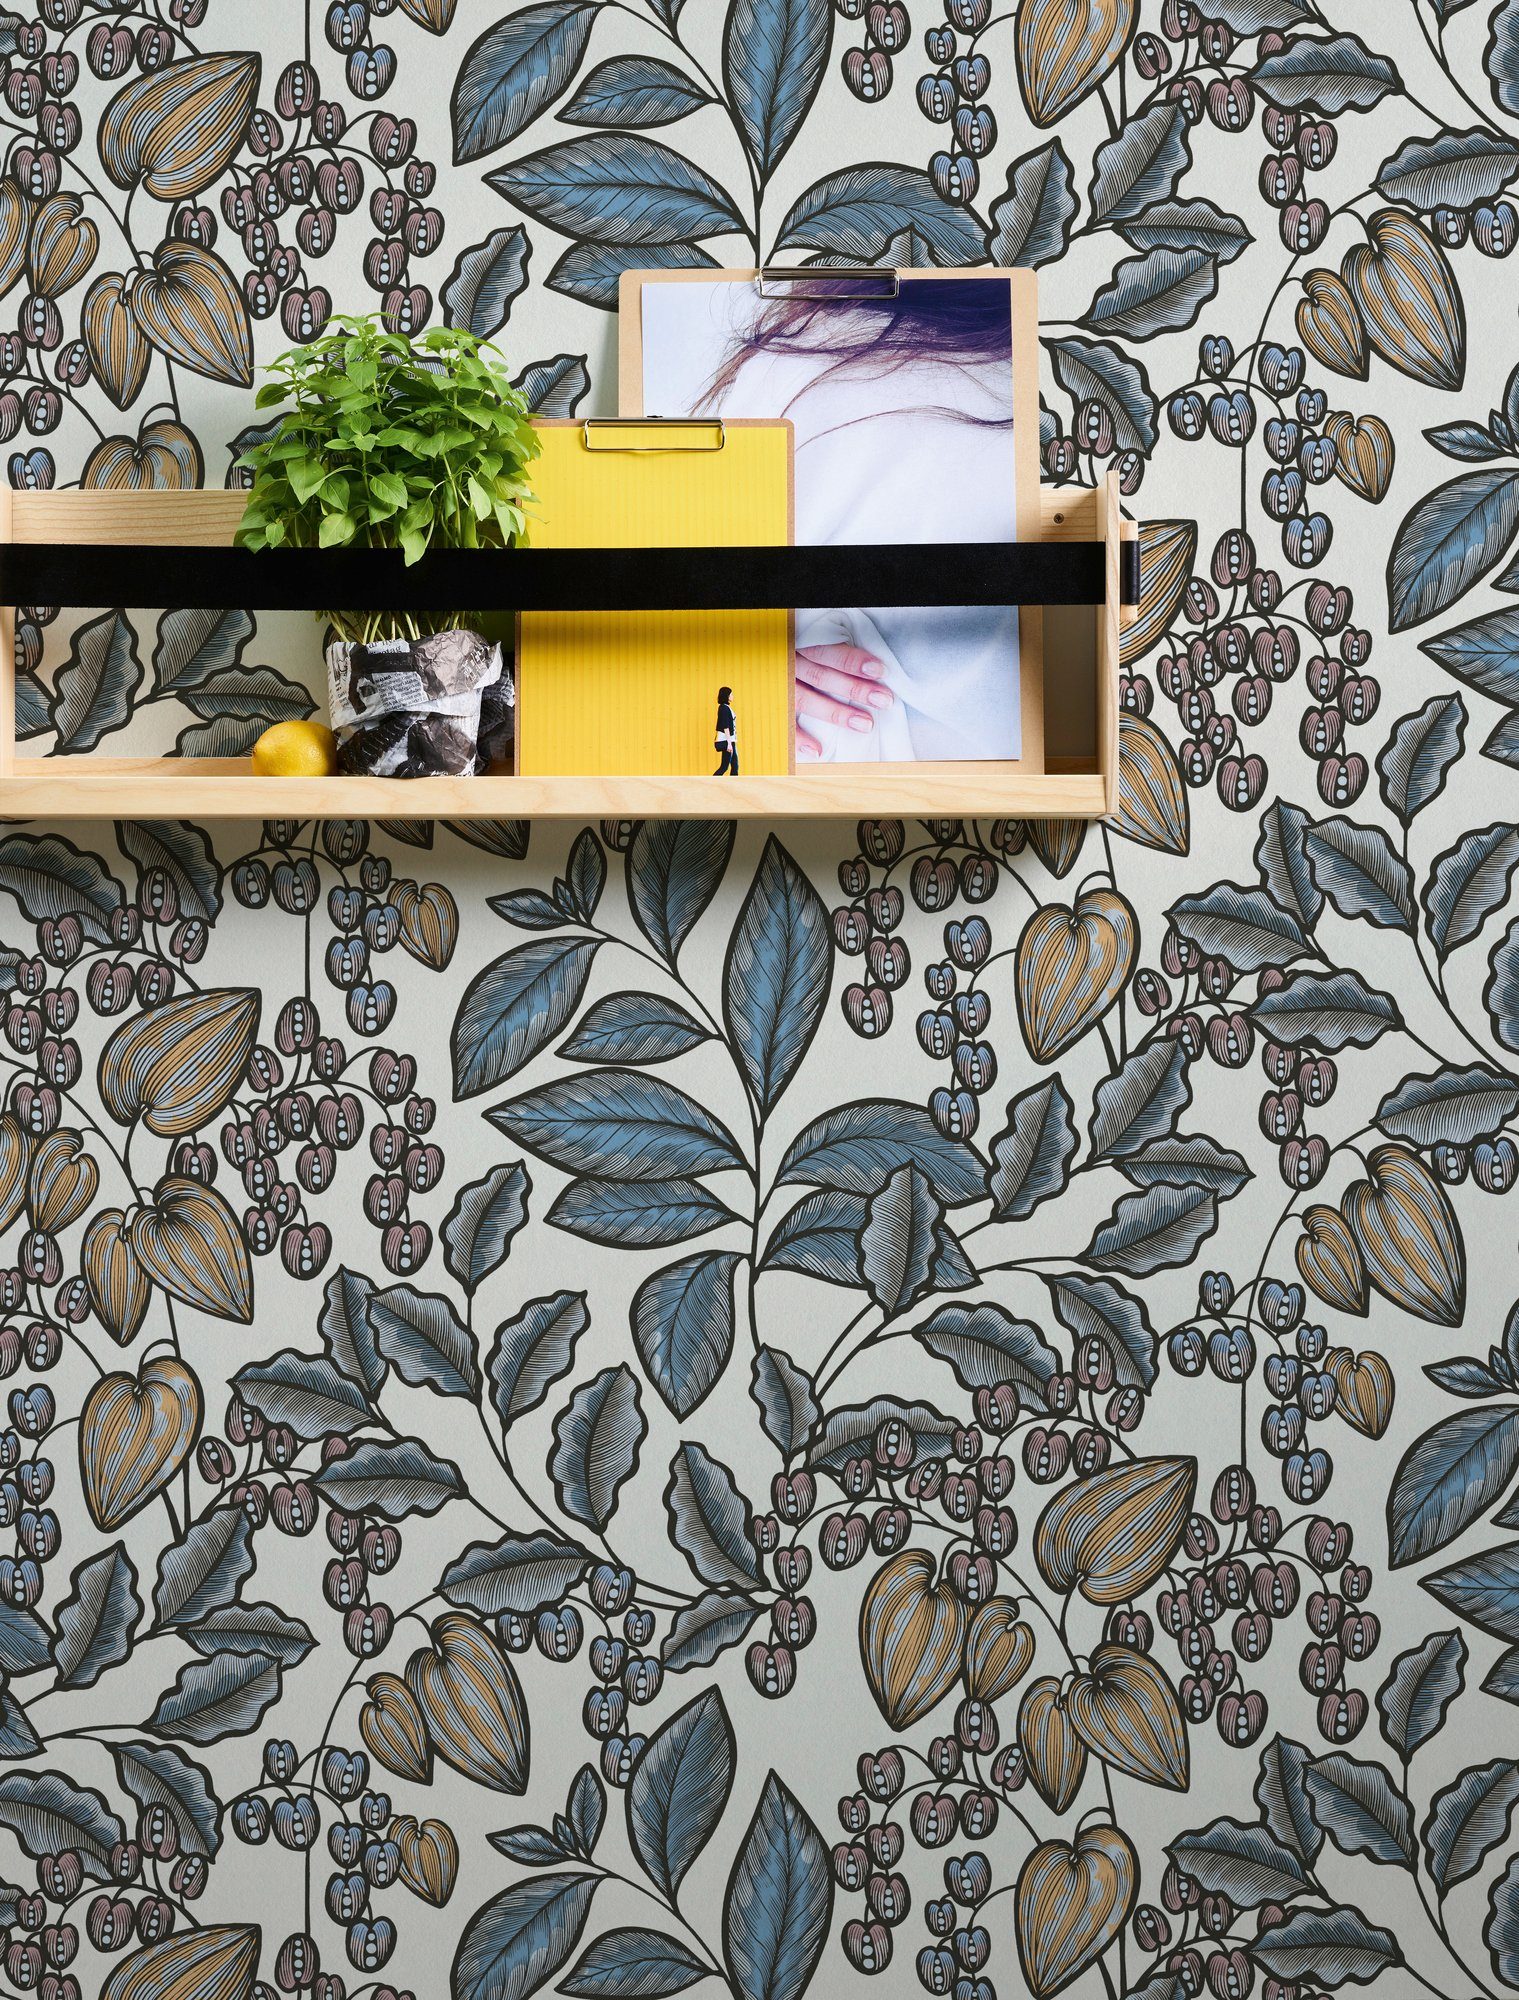 blau/weiß/gelb Paper Tapete botanisch, Vliestapete Impression, floral, Blumen glatt, Floral Architects